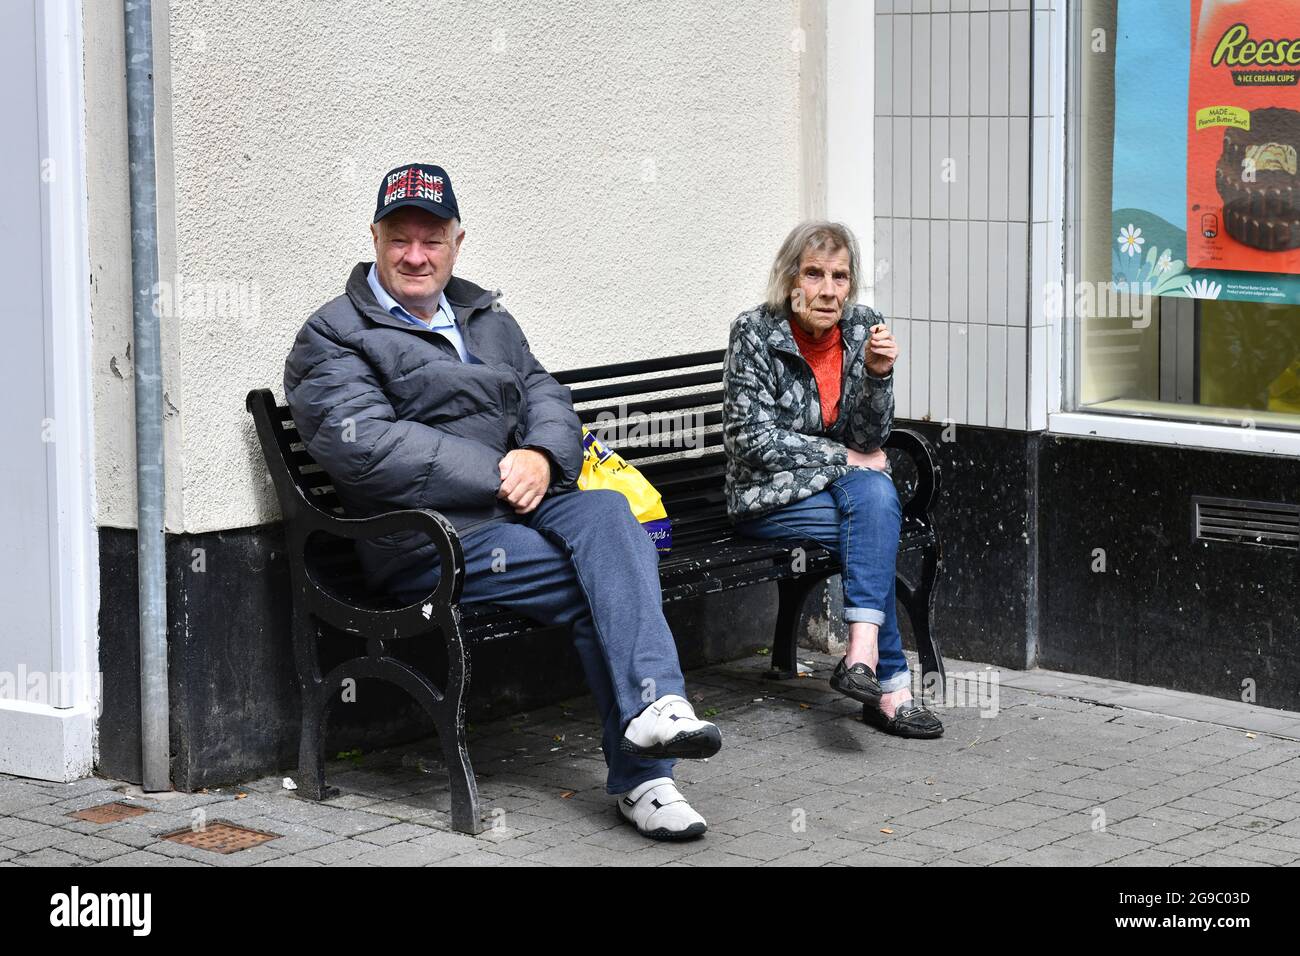 Ältere Dame, die beim Entspannen mit einer Zigarette Platz nimmt 2021. Straße Straßen Großbritannien Lifestyle Rauchen alte Sitzbank Stadtzentrum Großbritannien Stockfoto